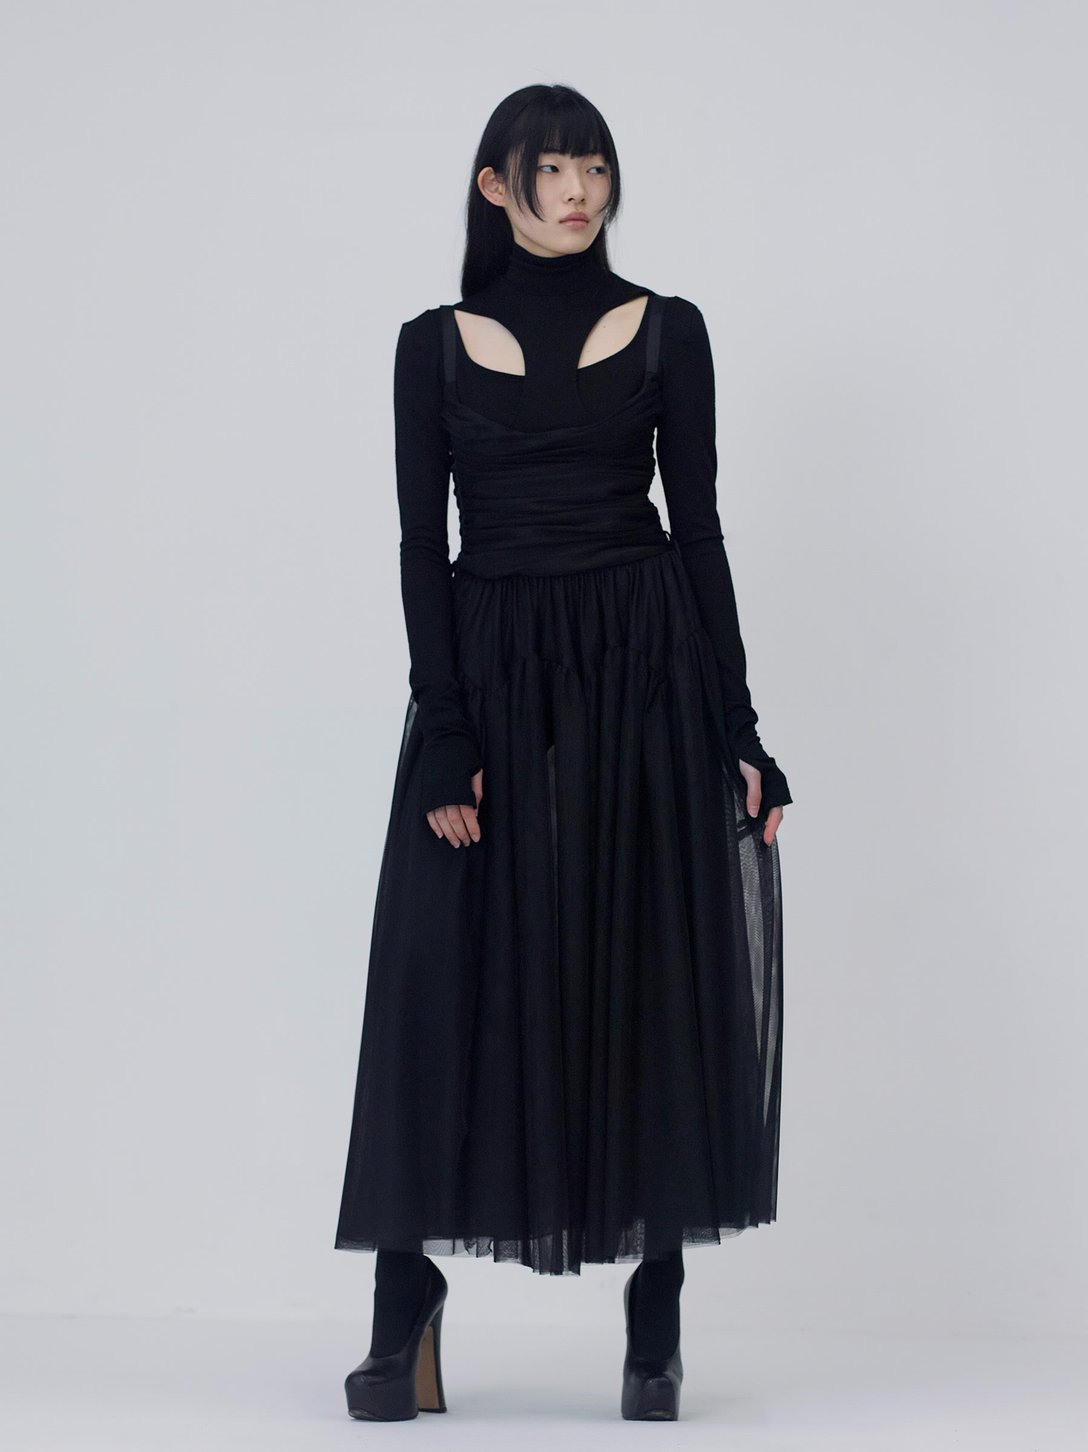 黒のロングスカートとブラトップを着ている女性モデル